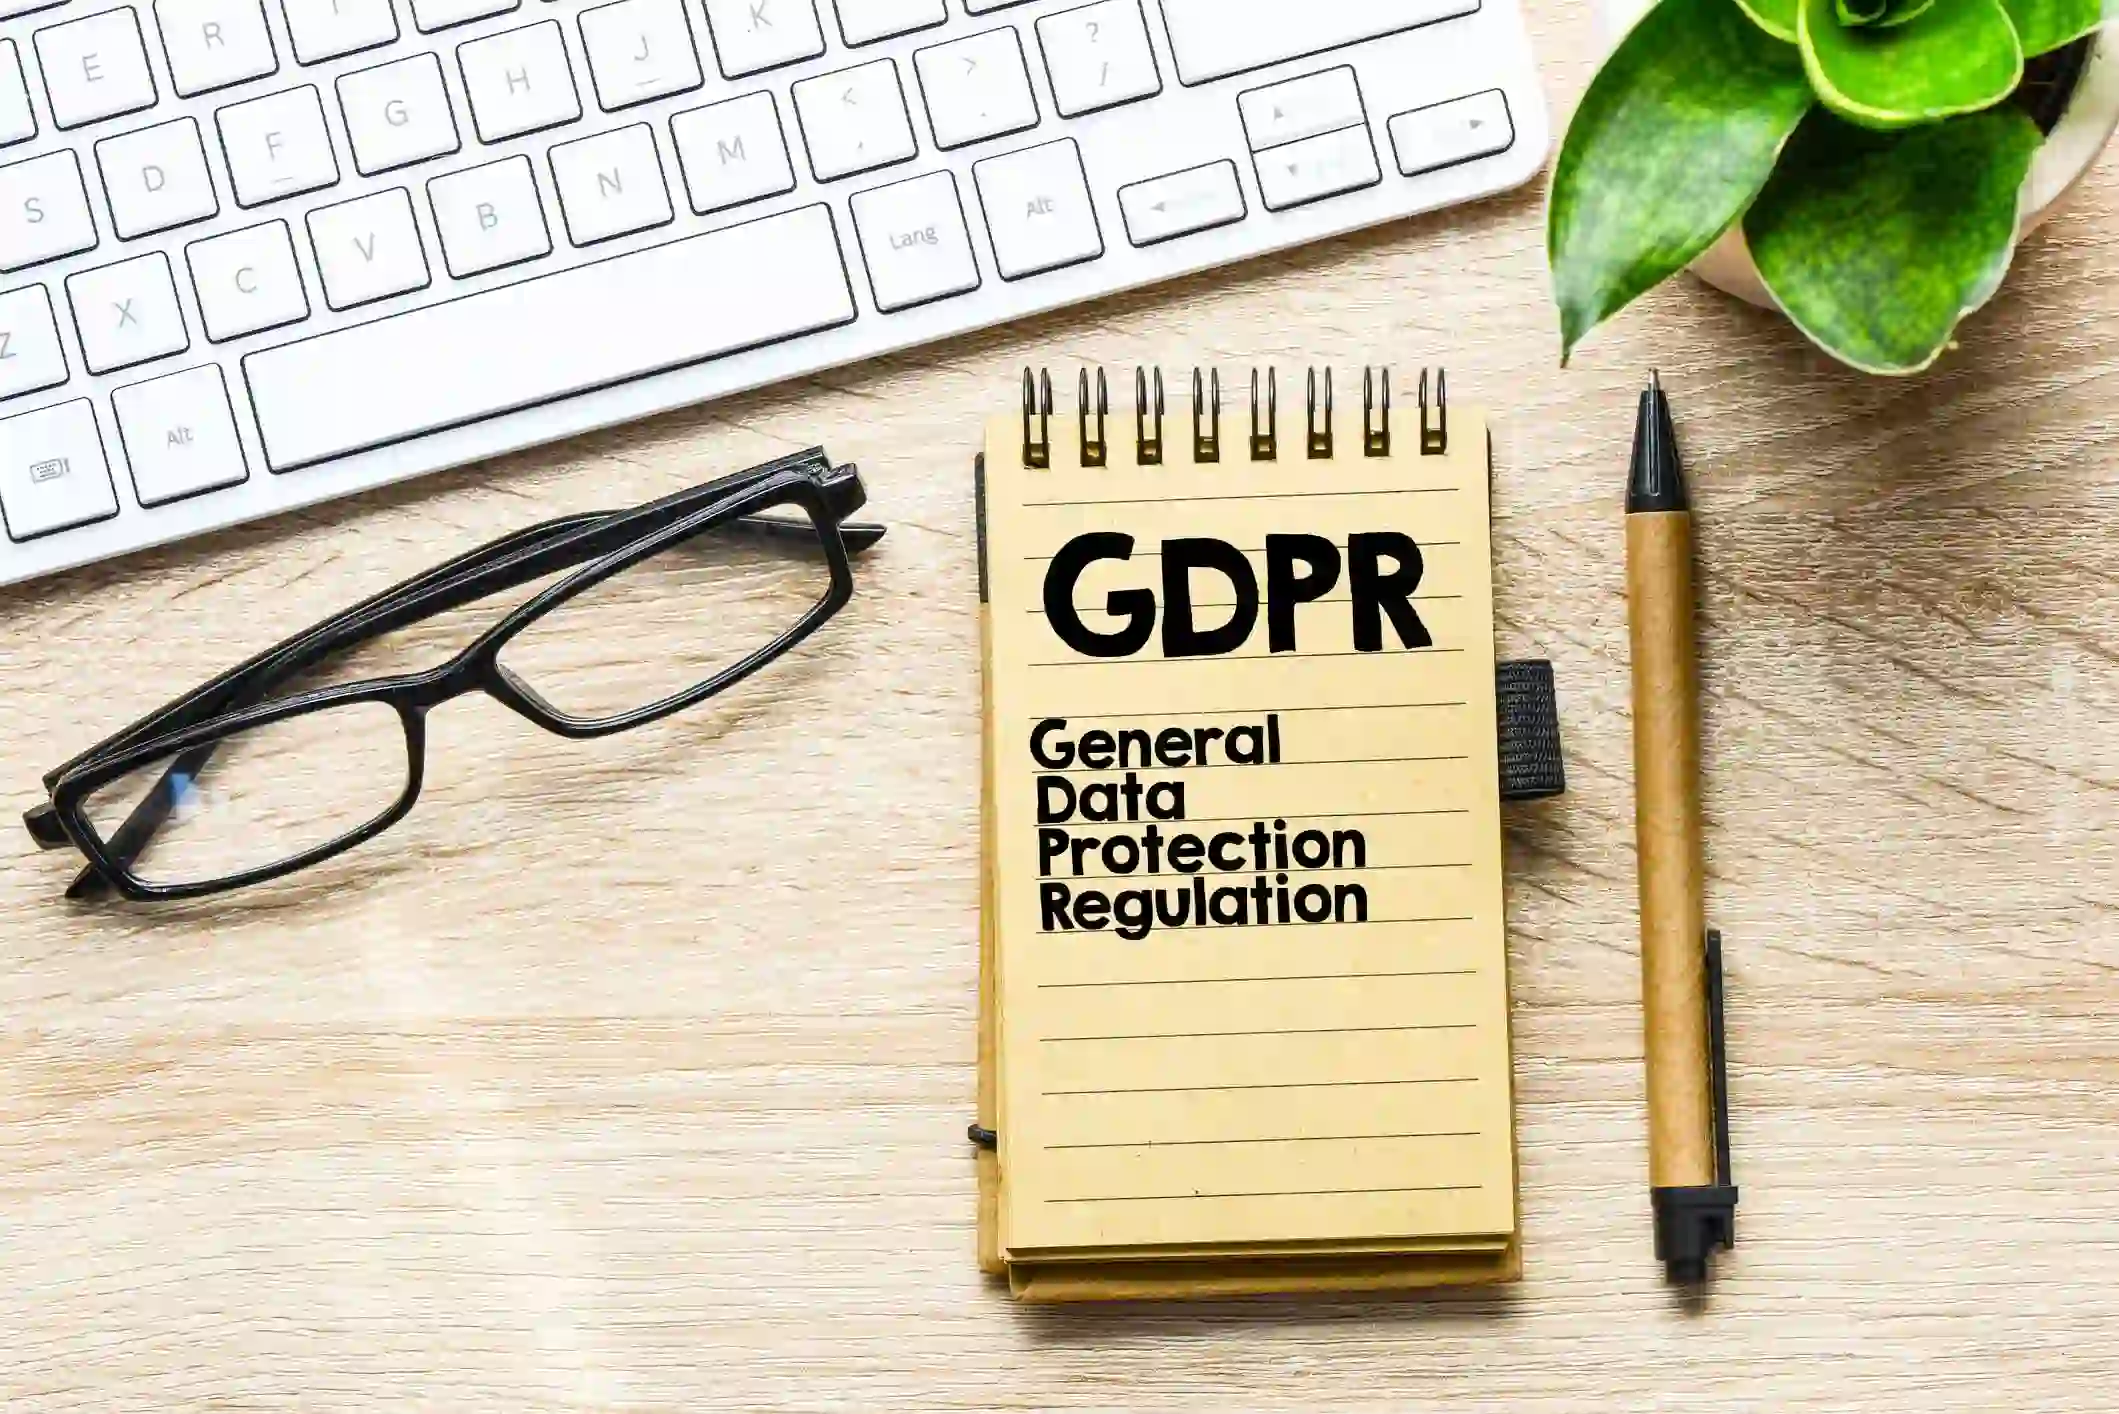 Un carnet avec l'inscription 'GDPR General Data Protection Regulation' est posé sur un bureau en bois, à côté d'un clavier, d'une paire de lunettes et d'un stylo. Une plante verte est visible en arrière-plan, suggérant un environnement de travail axé sur la conformité au RGPD.